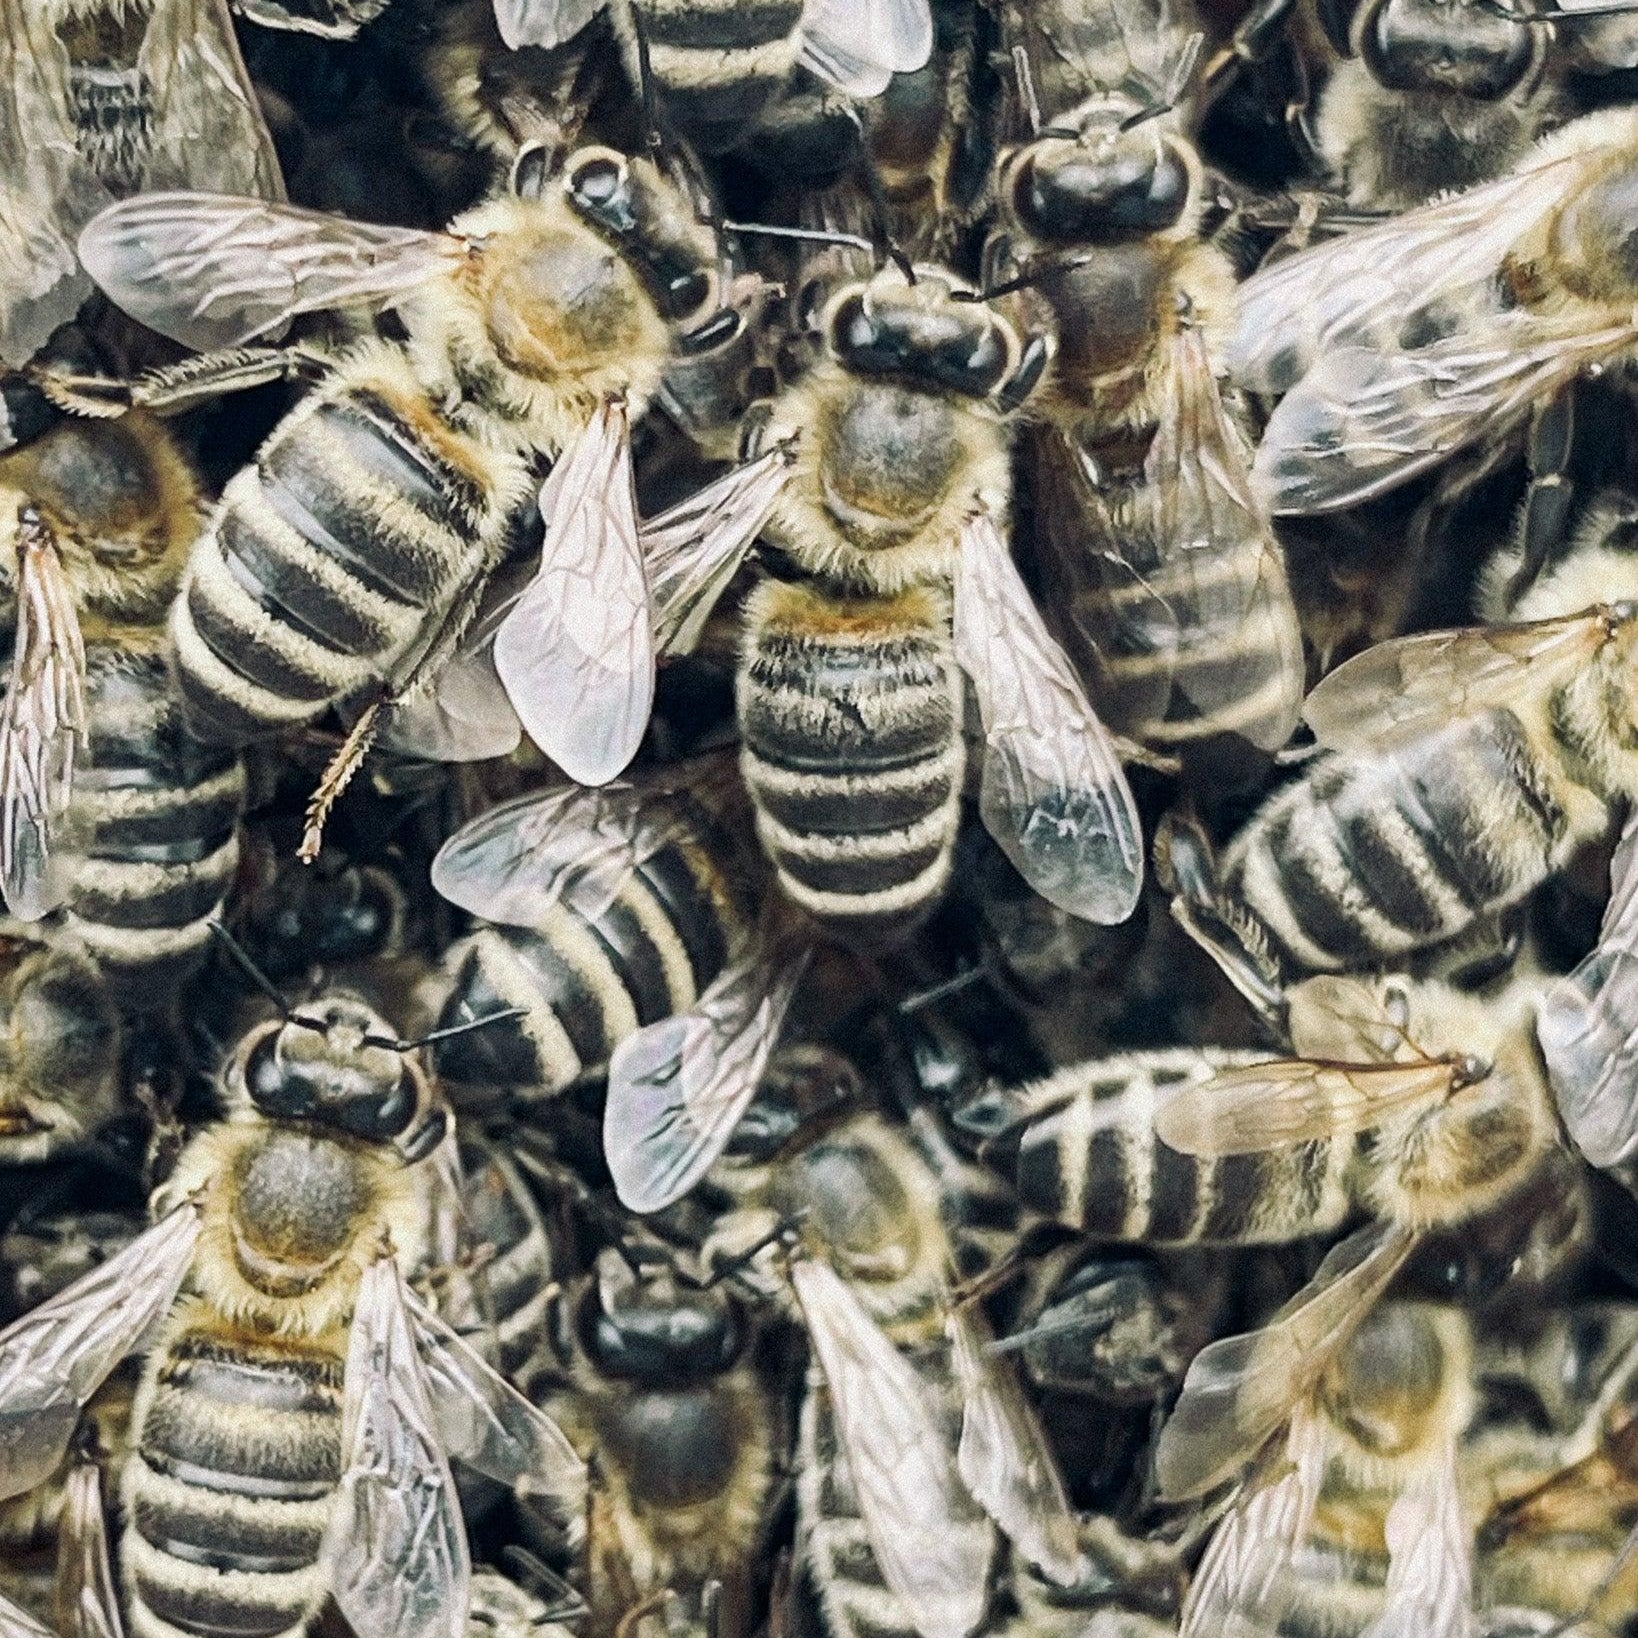 Včely a produkce medu: Včelí chování a komunikace - Davidova ekologická včelí farma